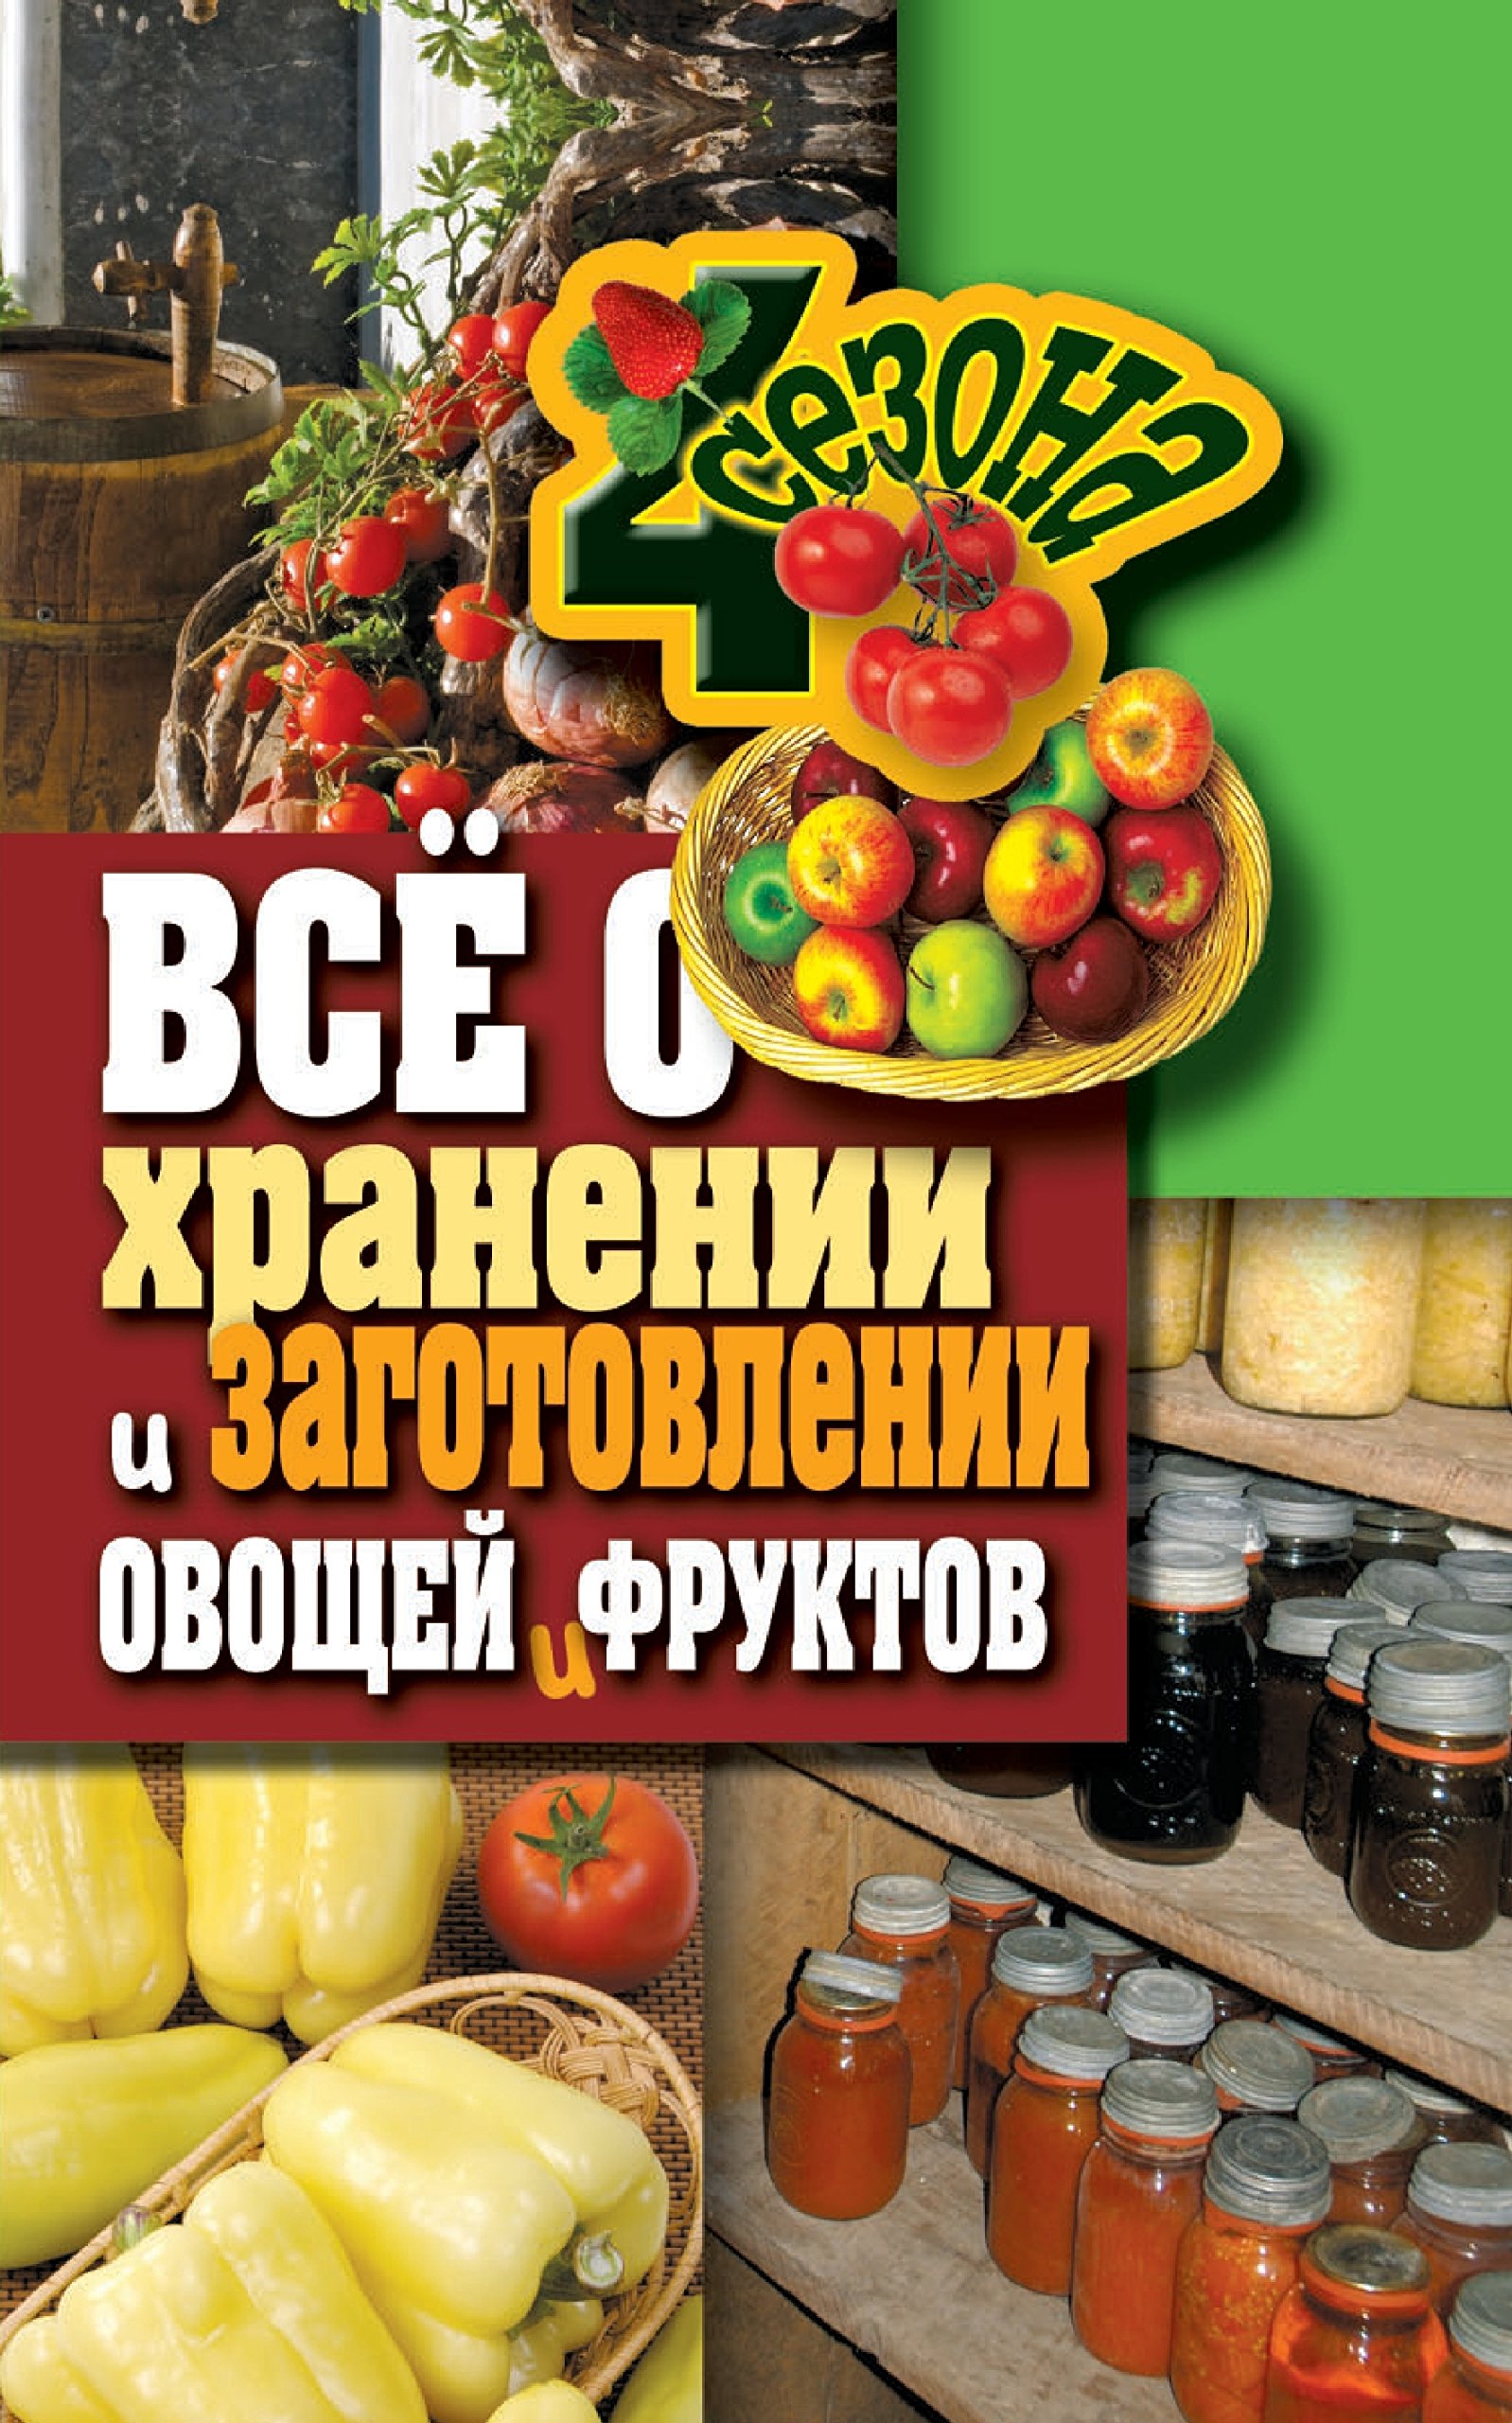 Все о хранении и заготовлении овощей и фруктов (Russian Edition)